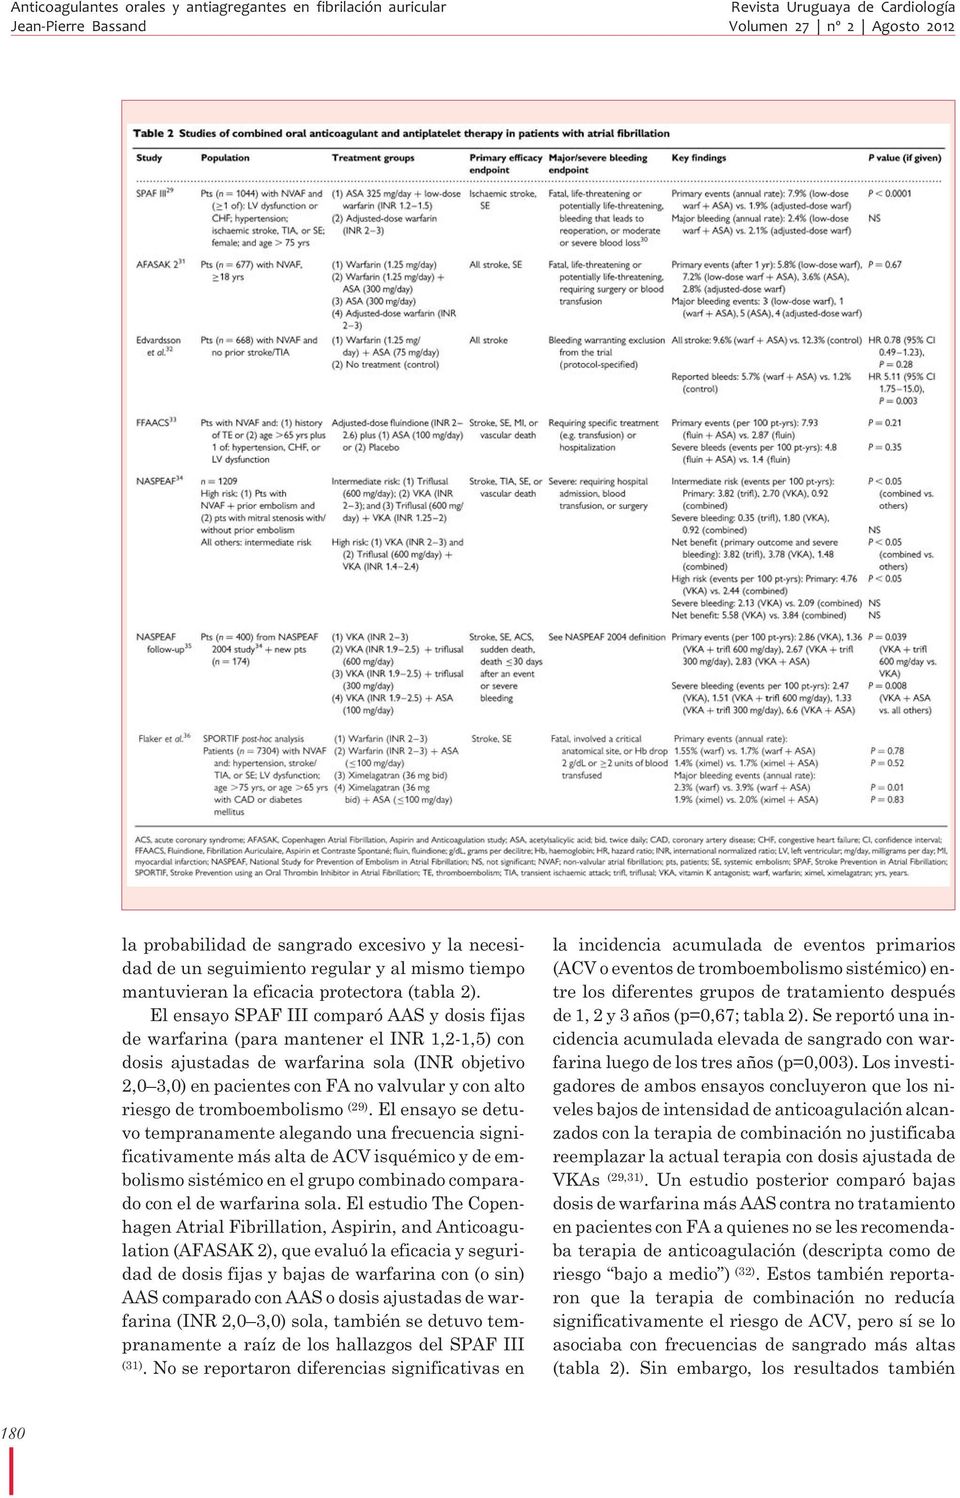 El ensayo SPAF III comparó AAS y dosis fijas de warfarina (para mantener el INR 1,2-1,5) con dosis ajustadas de warfarina sola (INR objetivo 2,0 3,0) en pacientes con FA no valvular y con alto riesgo